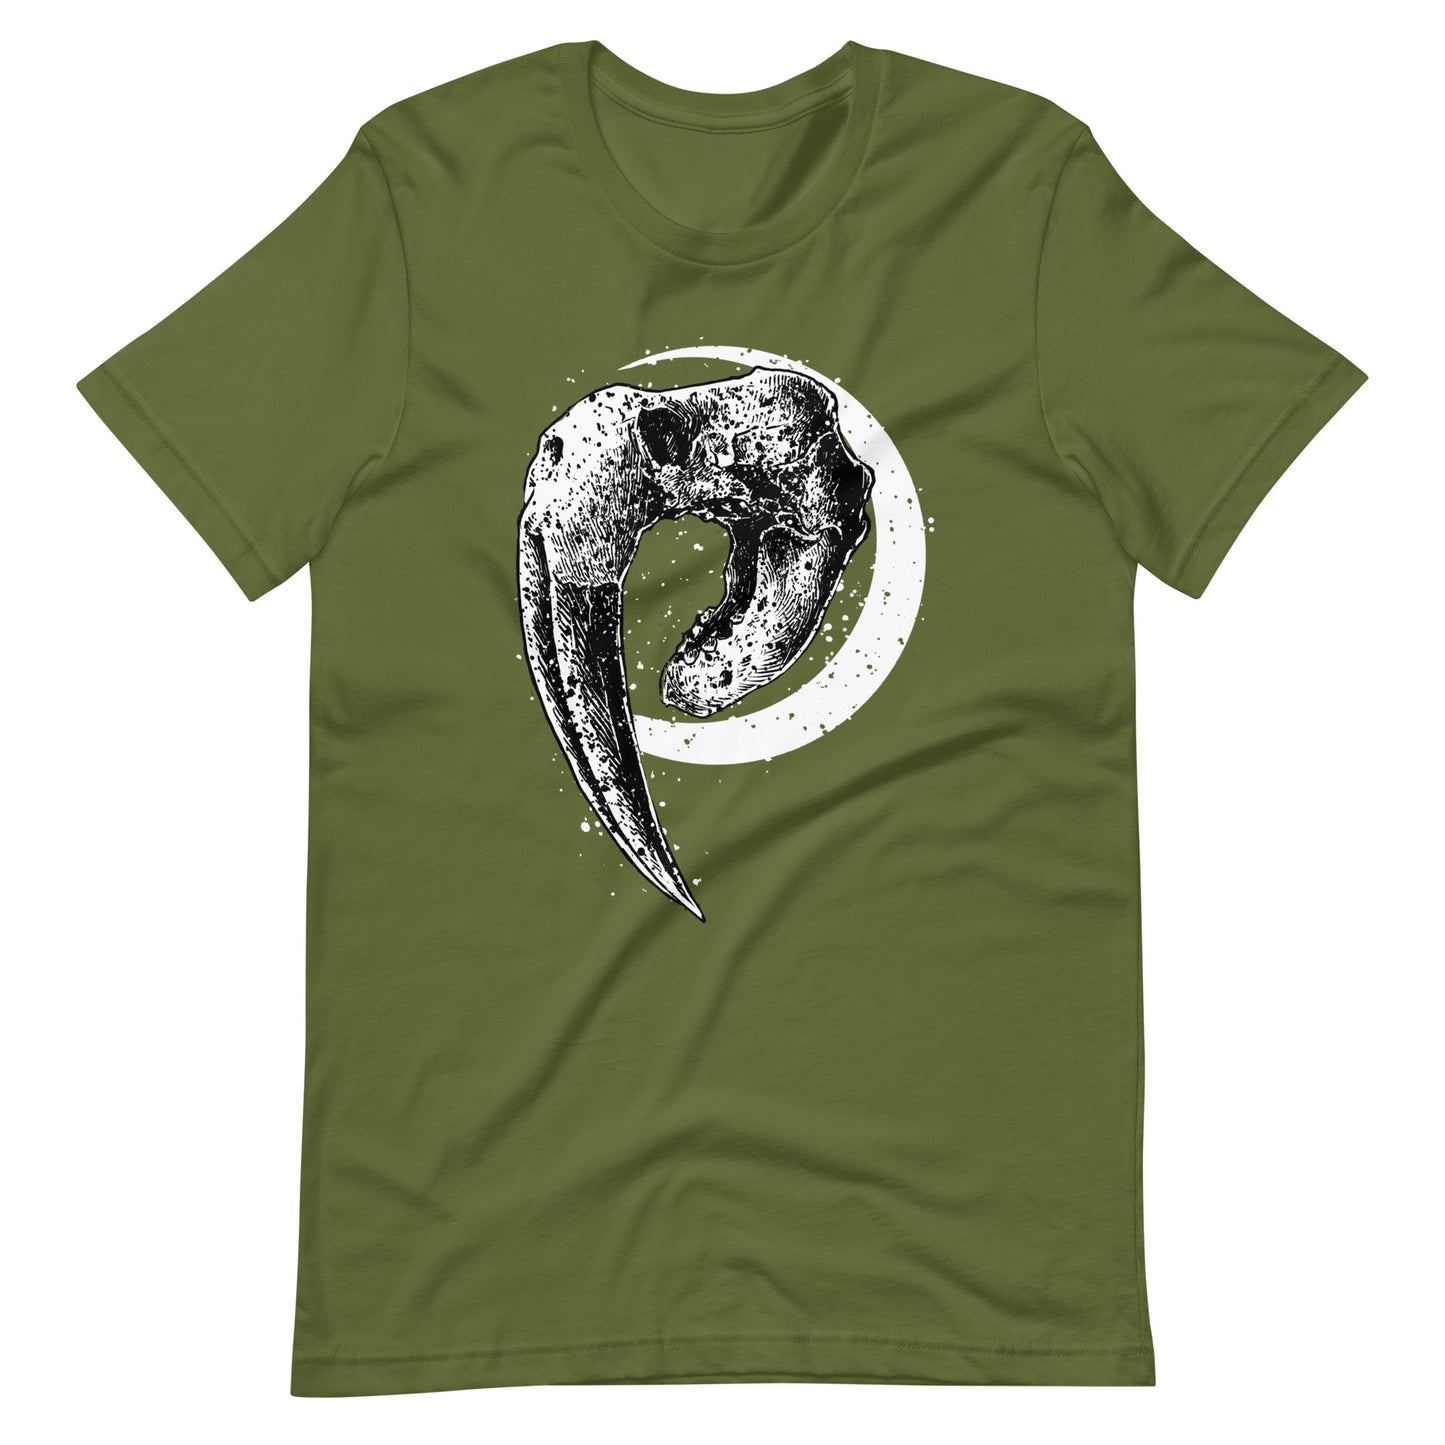 Walrus - Men's t-shirt - Olive Front